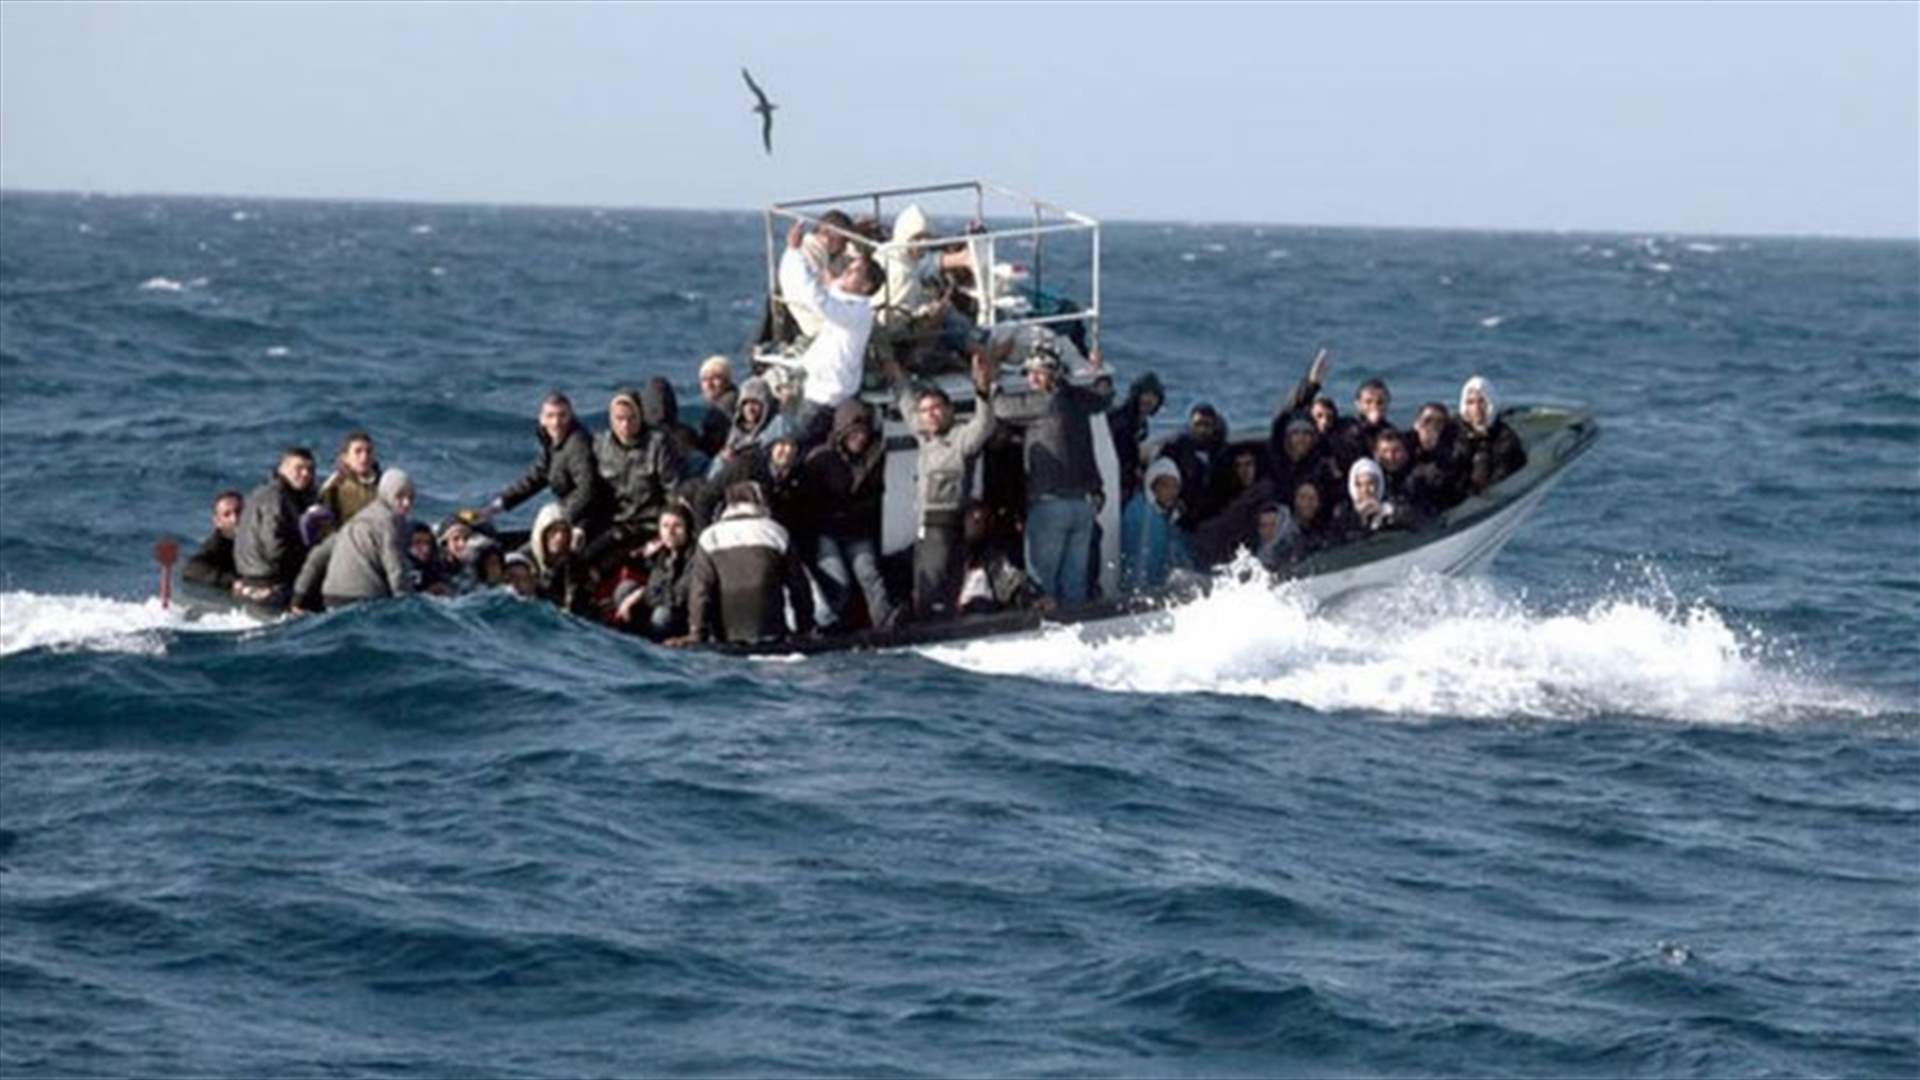 انتشال نحو 1200 مهاجر قبالة ليبيا أثناء إبحارهم إلى إيطاليا